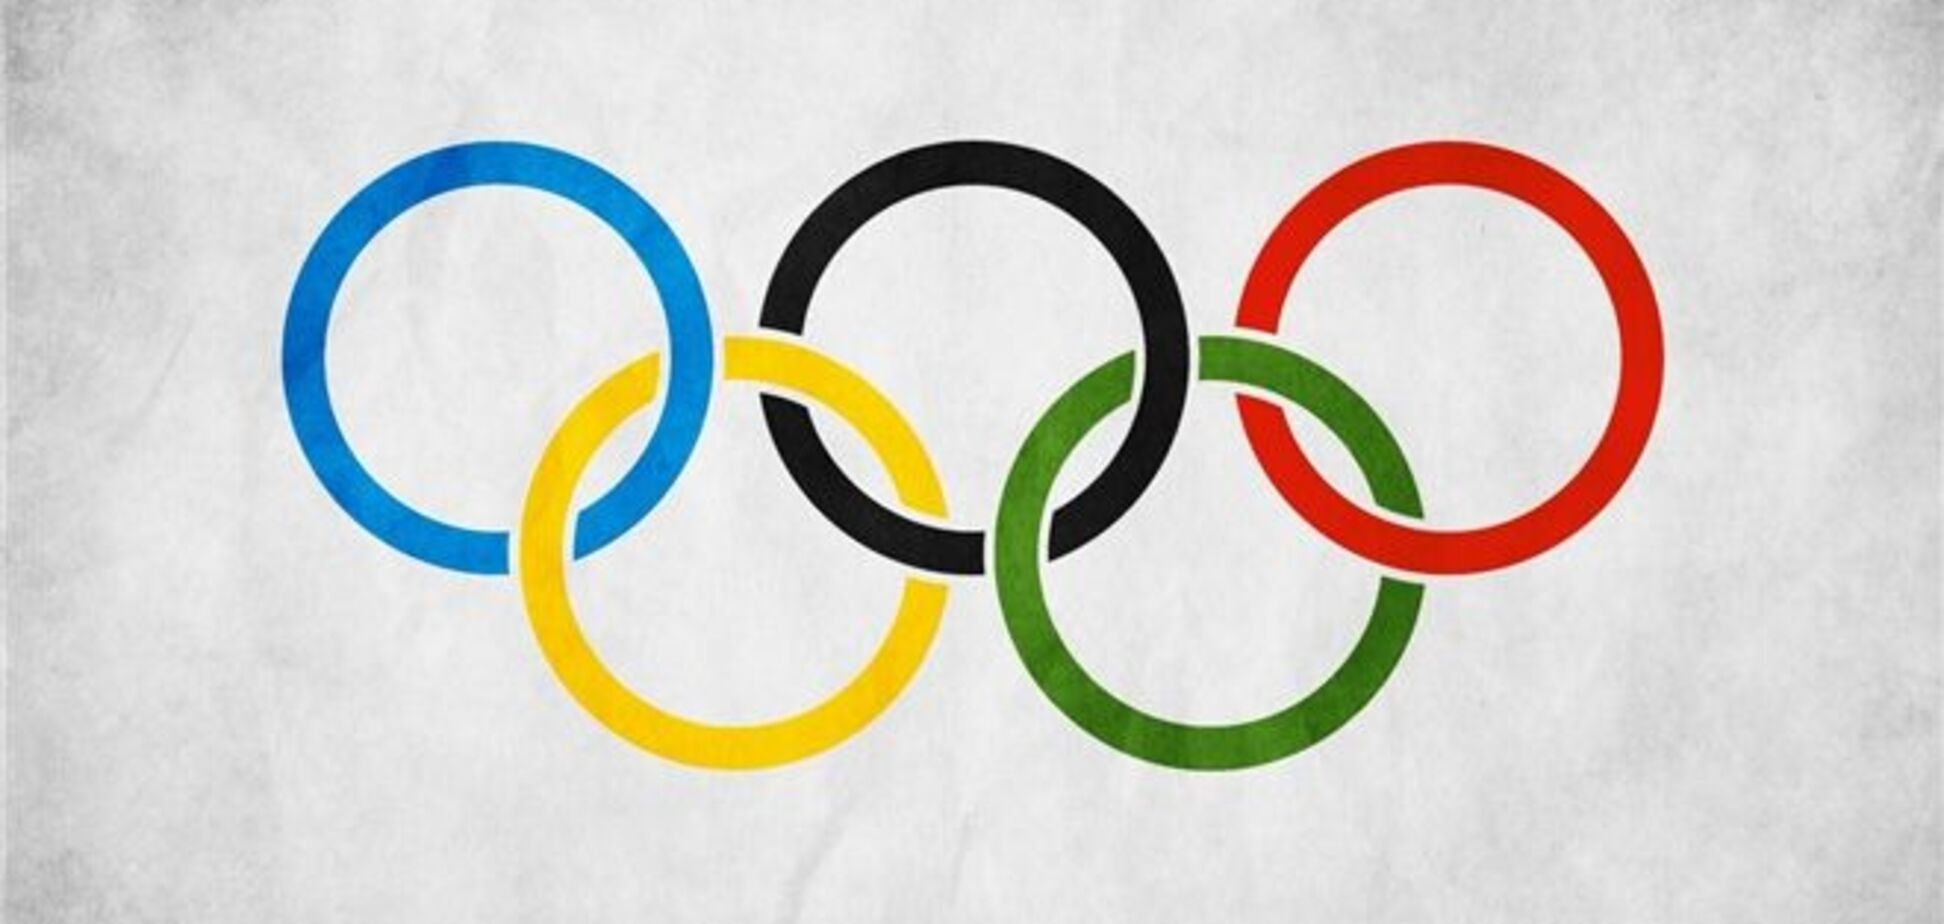 Трансляция Олимпиад 2014 и 2016 обойдется Украине в 21 млн грн